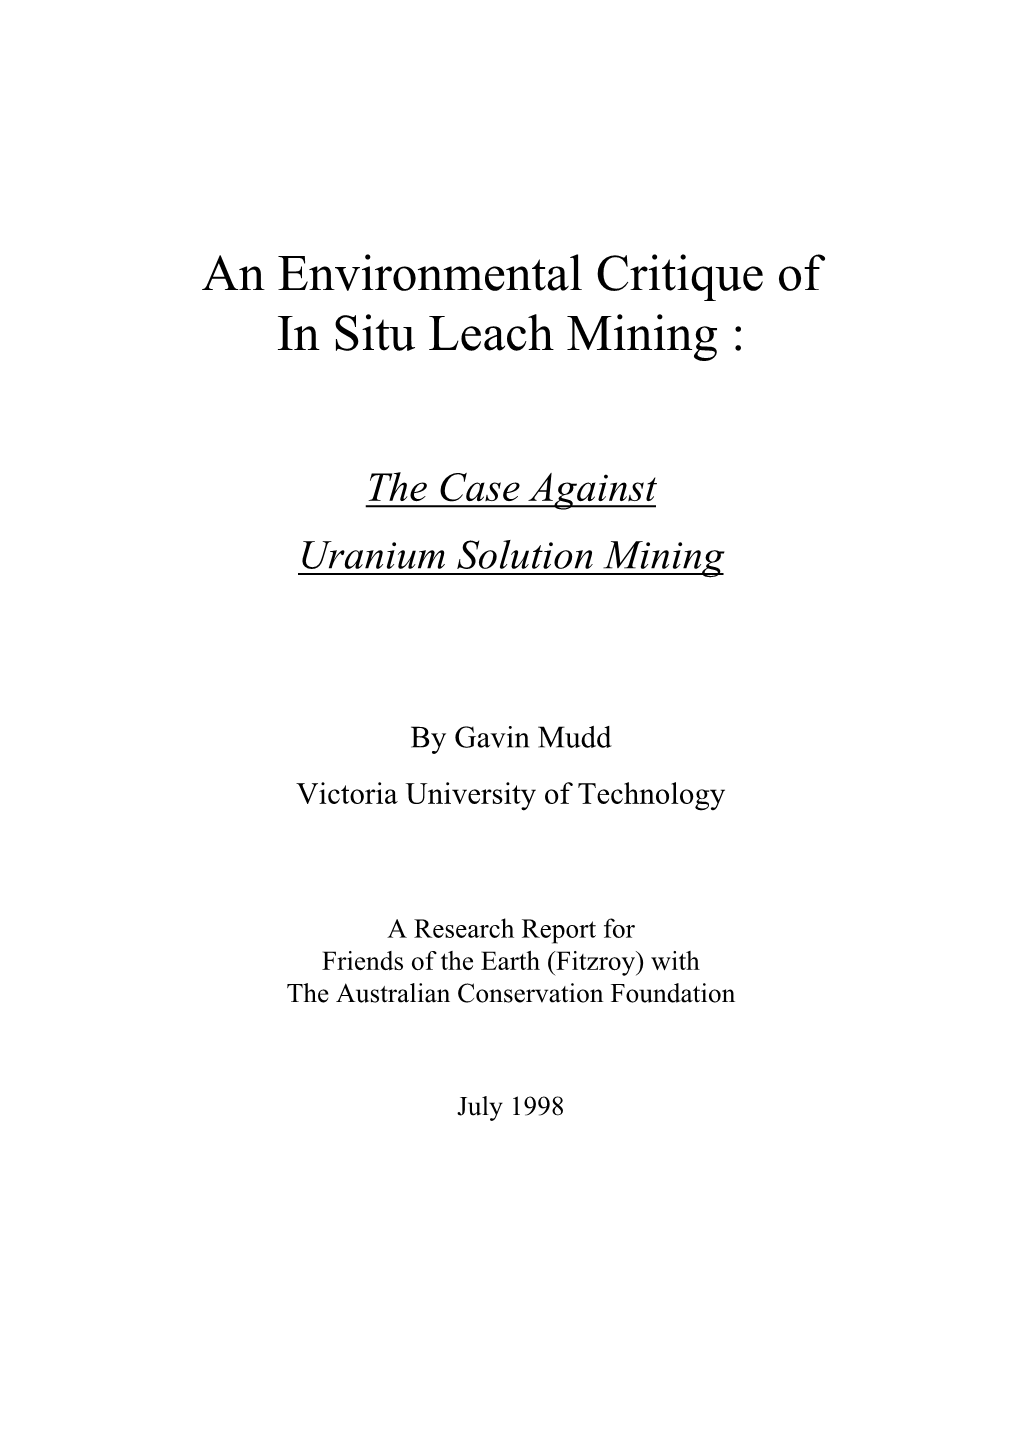 An Environmental Critique of in Situ Leach Mining